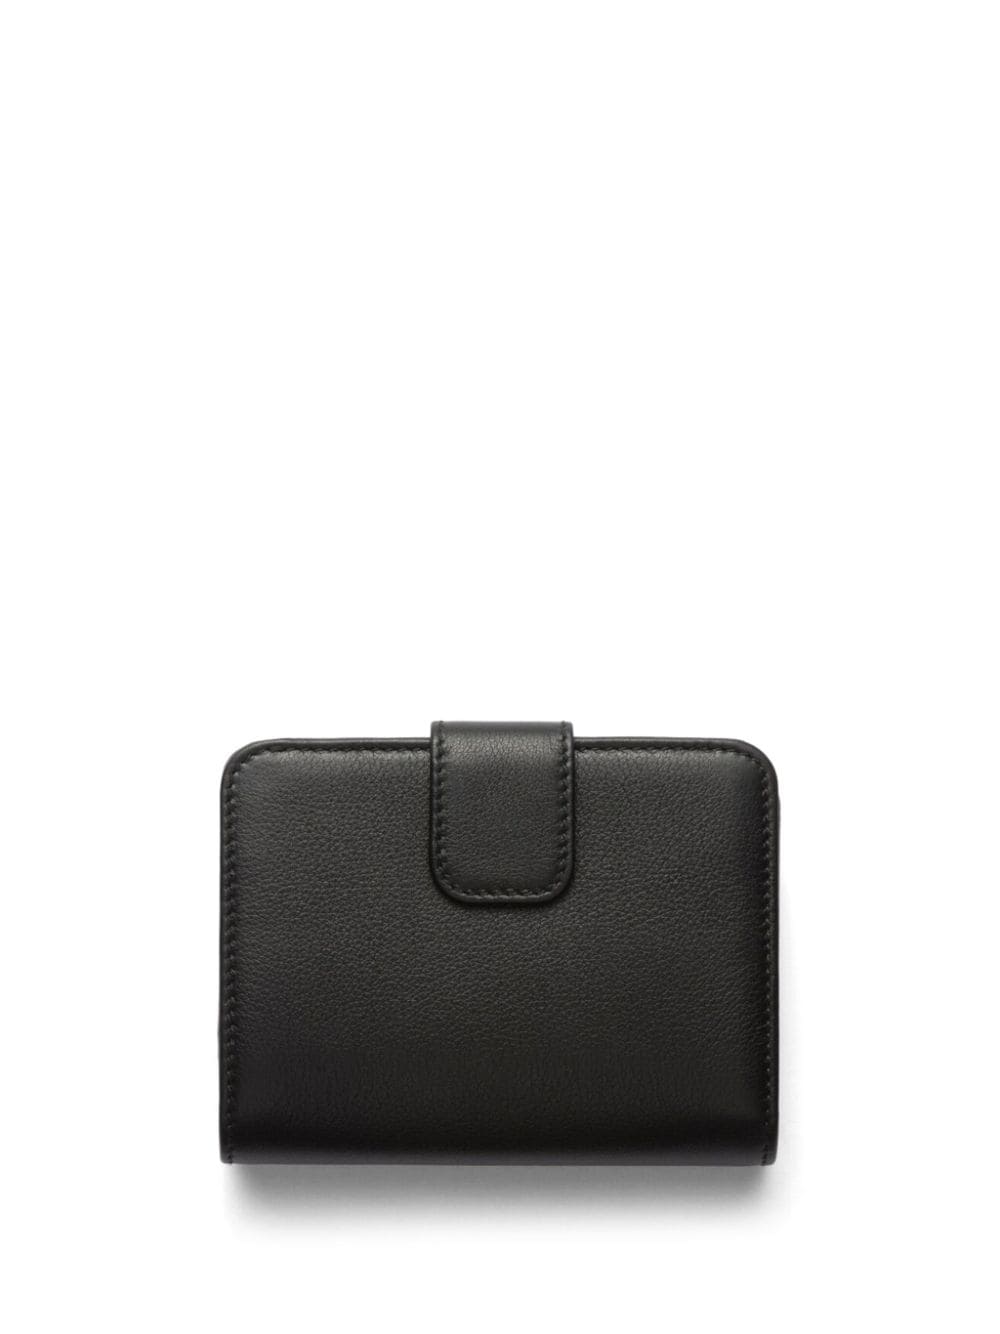 bi-fold leather wallet